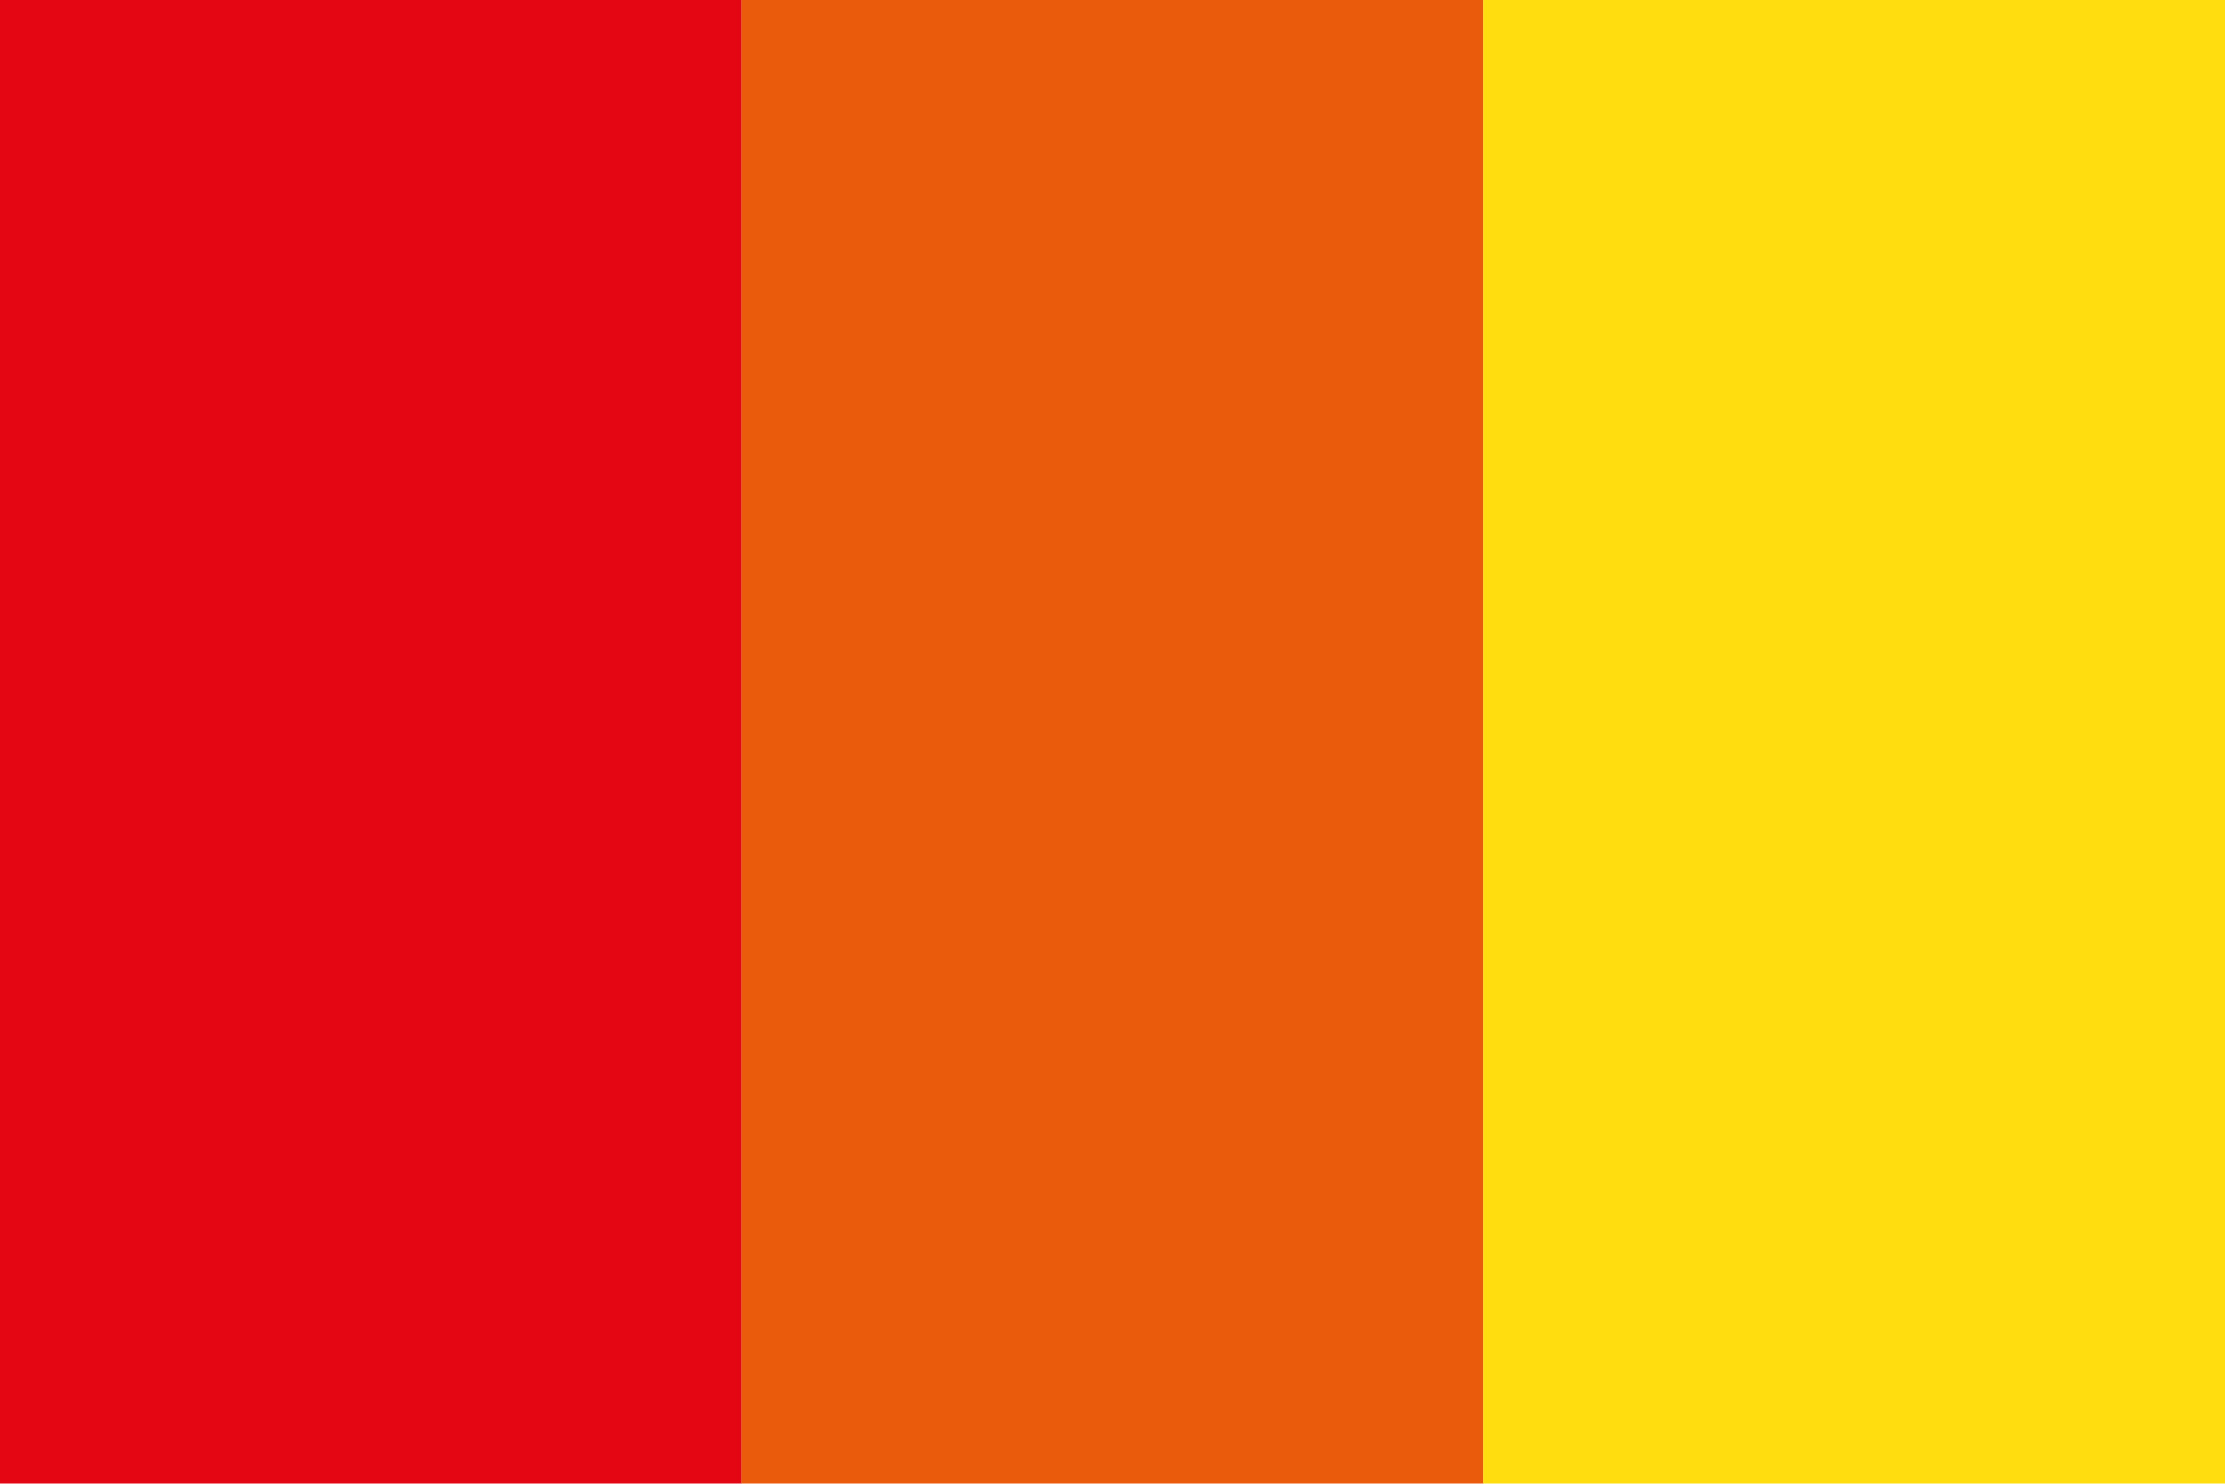 Drei Streifen von links nach rechts: Rot, Orange, Gelb